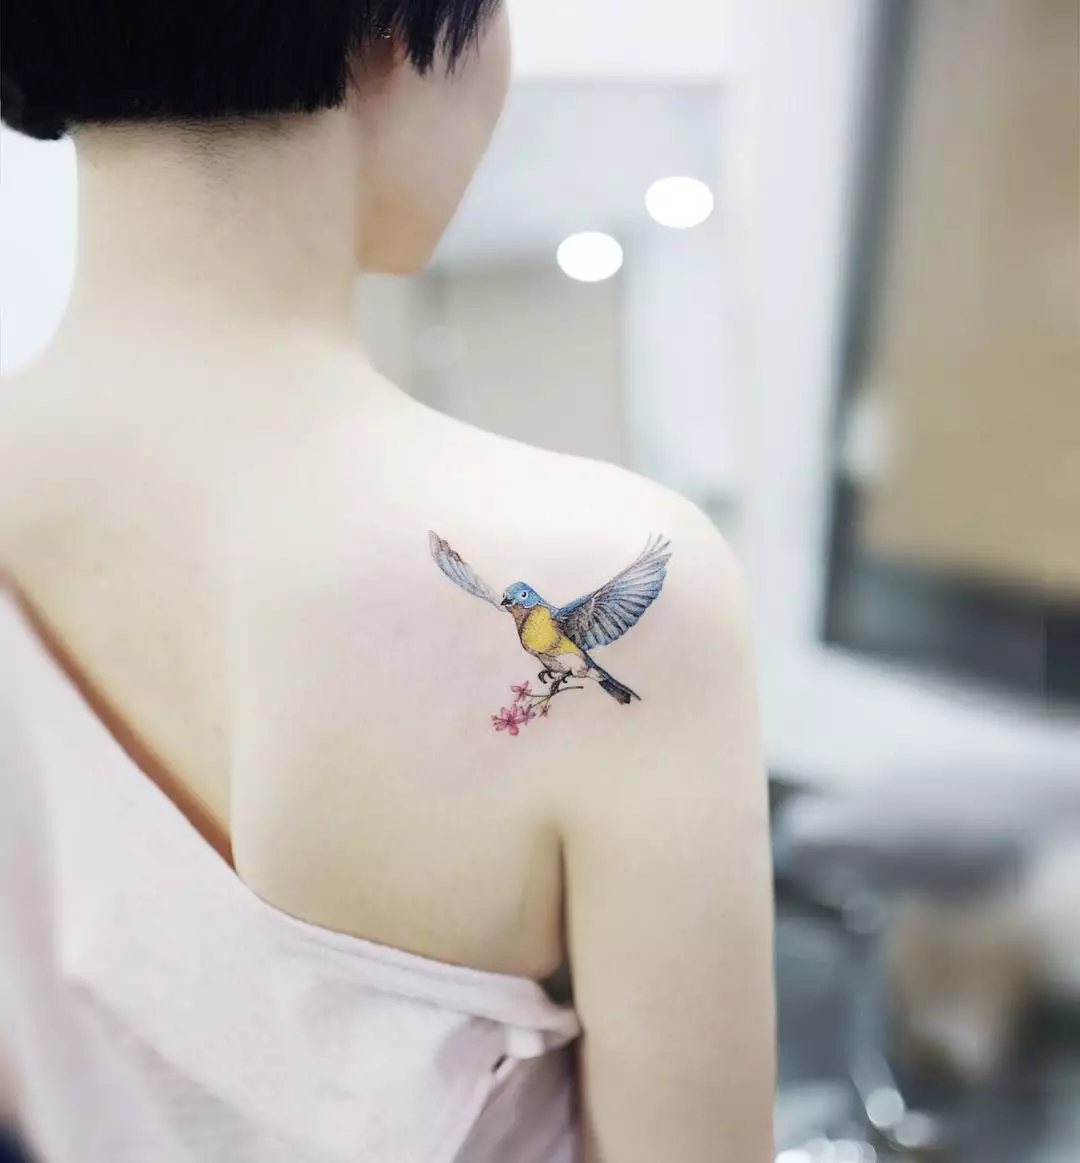 Koreano tattoo: Alang sa mga batang babaye sa South Korea. Gamay, uban ang paghubad, estilo sa minisya ug uban pang mga ideya sa sketch. Ilang kahulogan 250_4